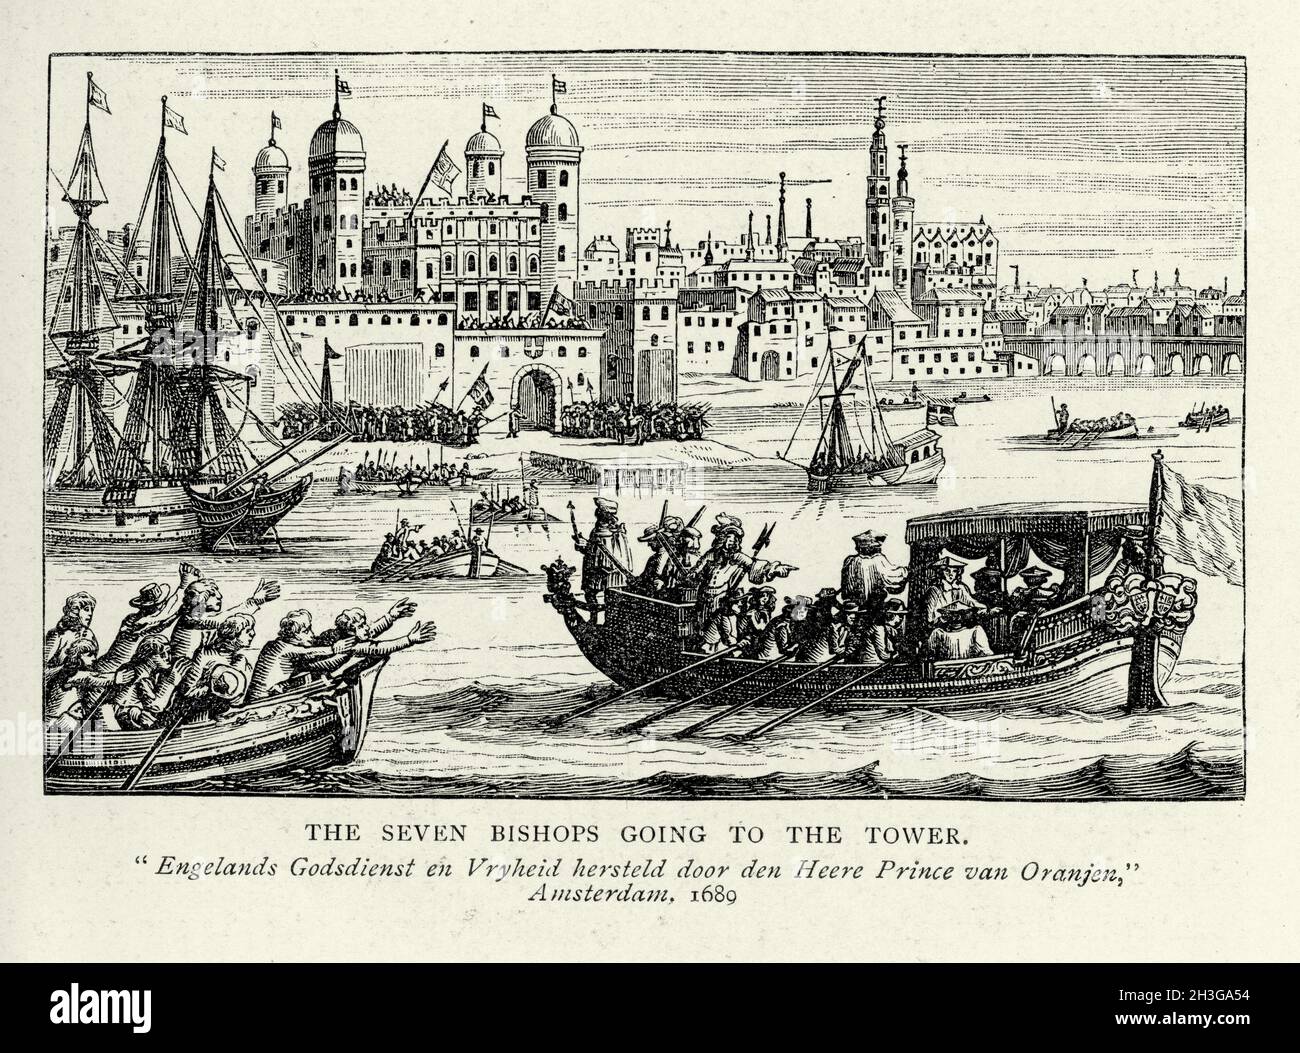 Les sept évêques allant à la Tour de Londres, la Tamise, XVIIe siècle Banque D'Images